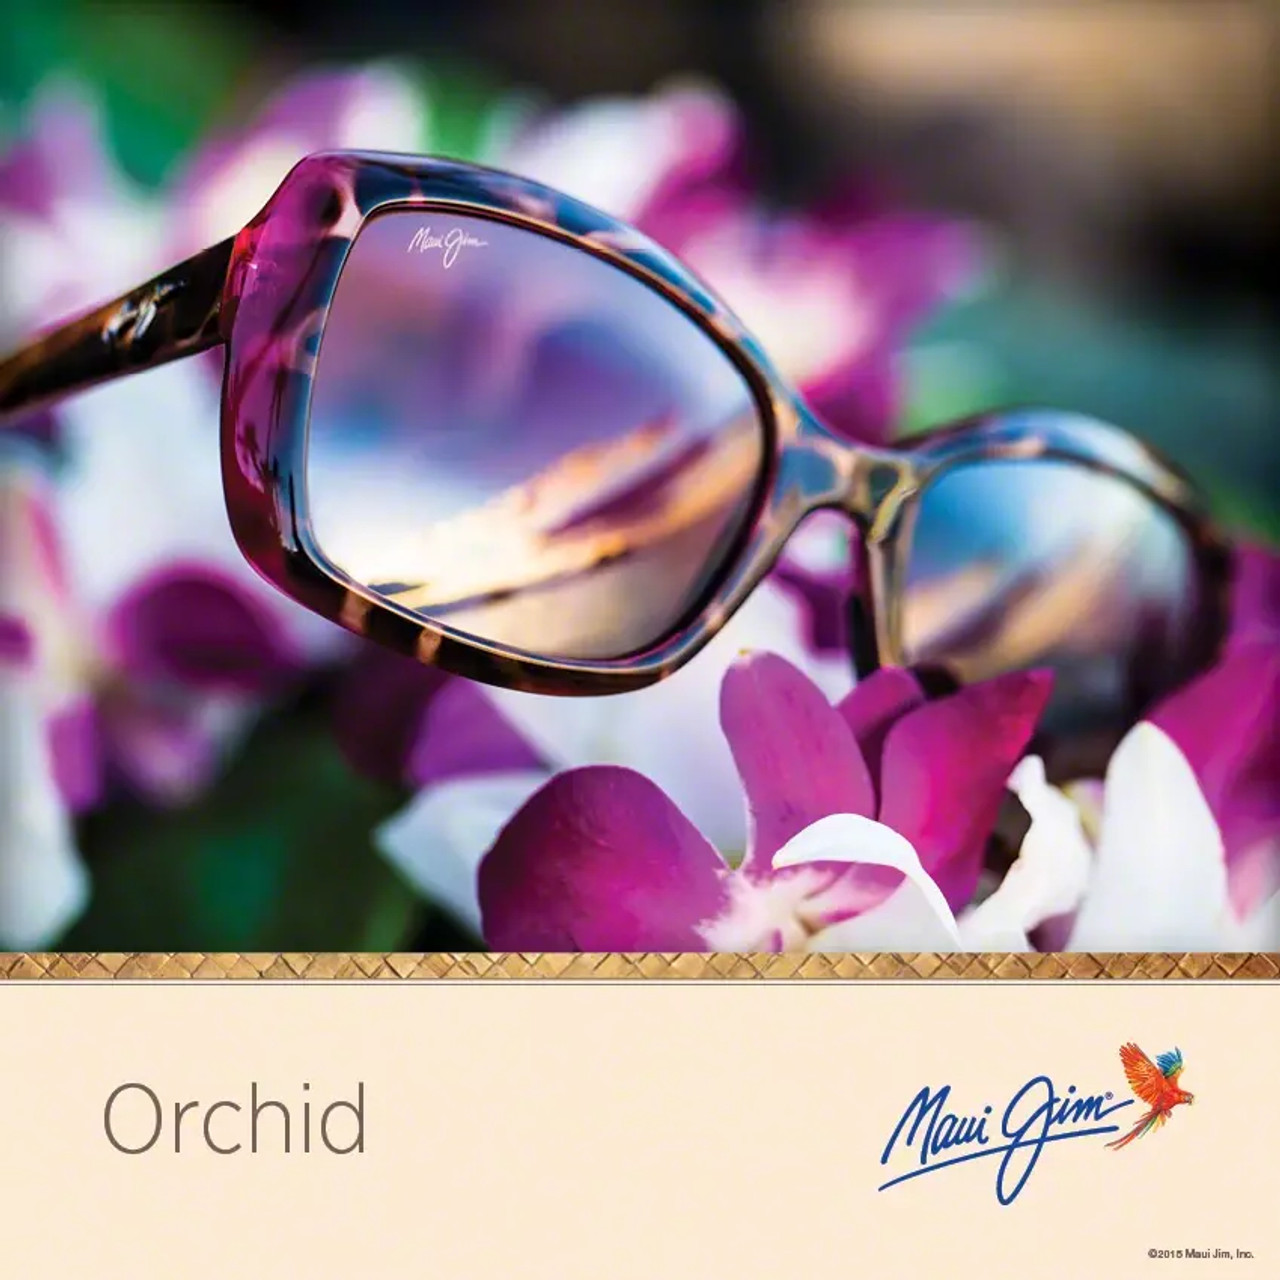 Orchid Social Media Post_612x612